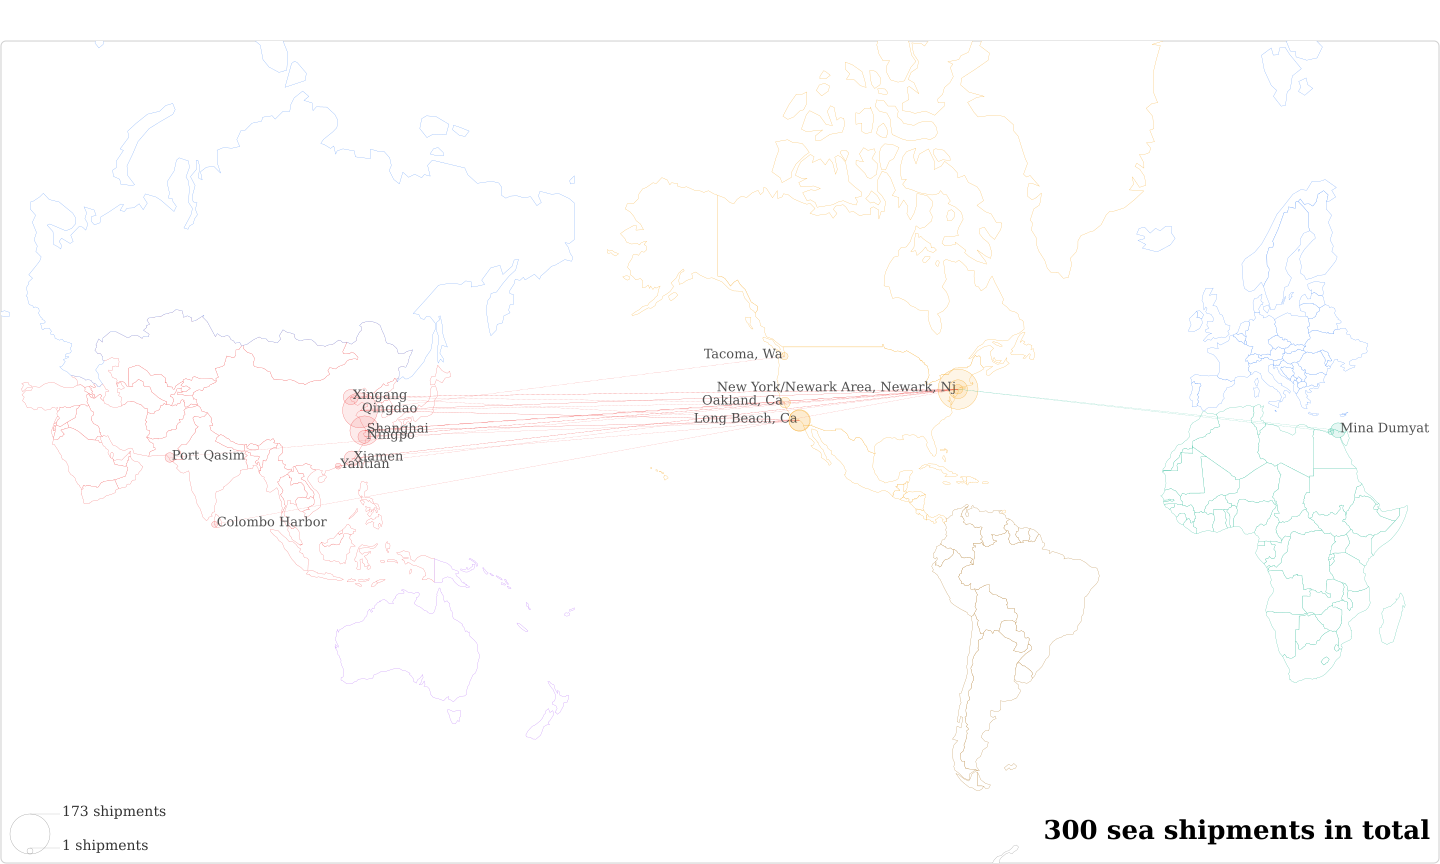 Steintex Mfg Ny's Imports Per Country Map